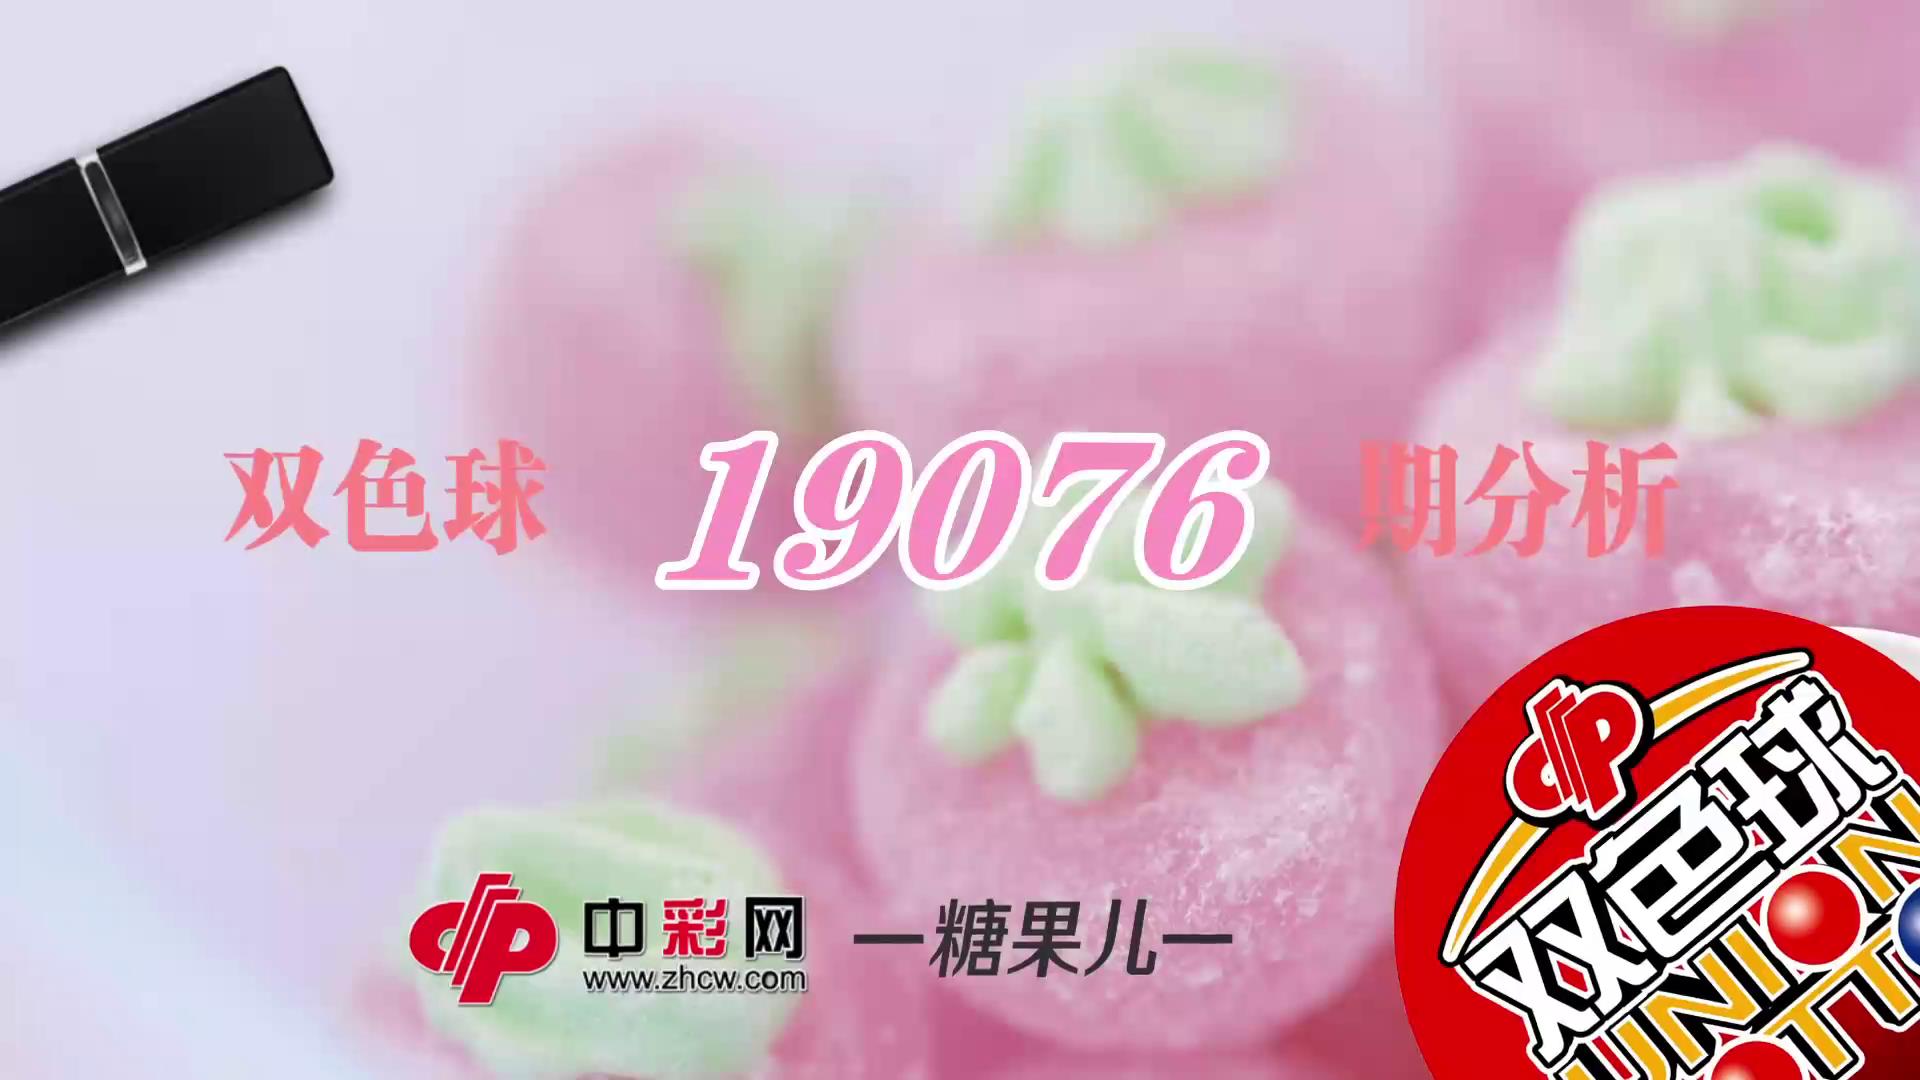 【中彩视频】糖果儿双色球第19076期